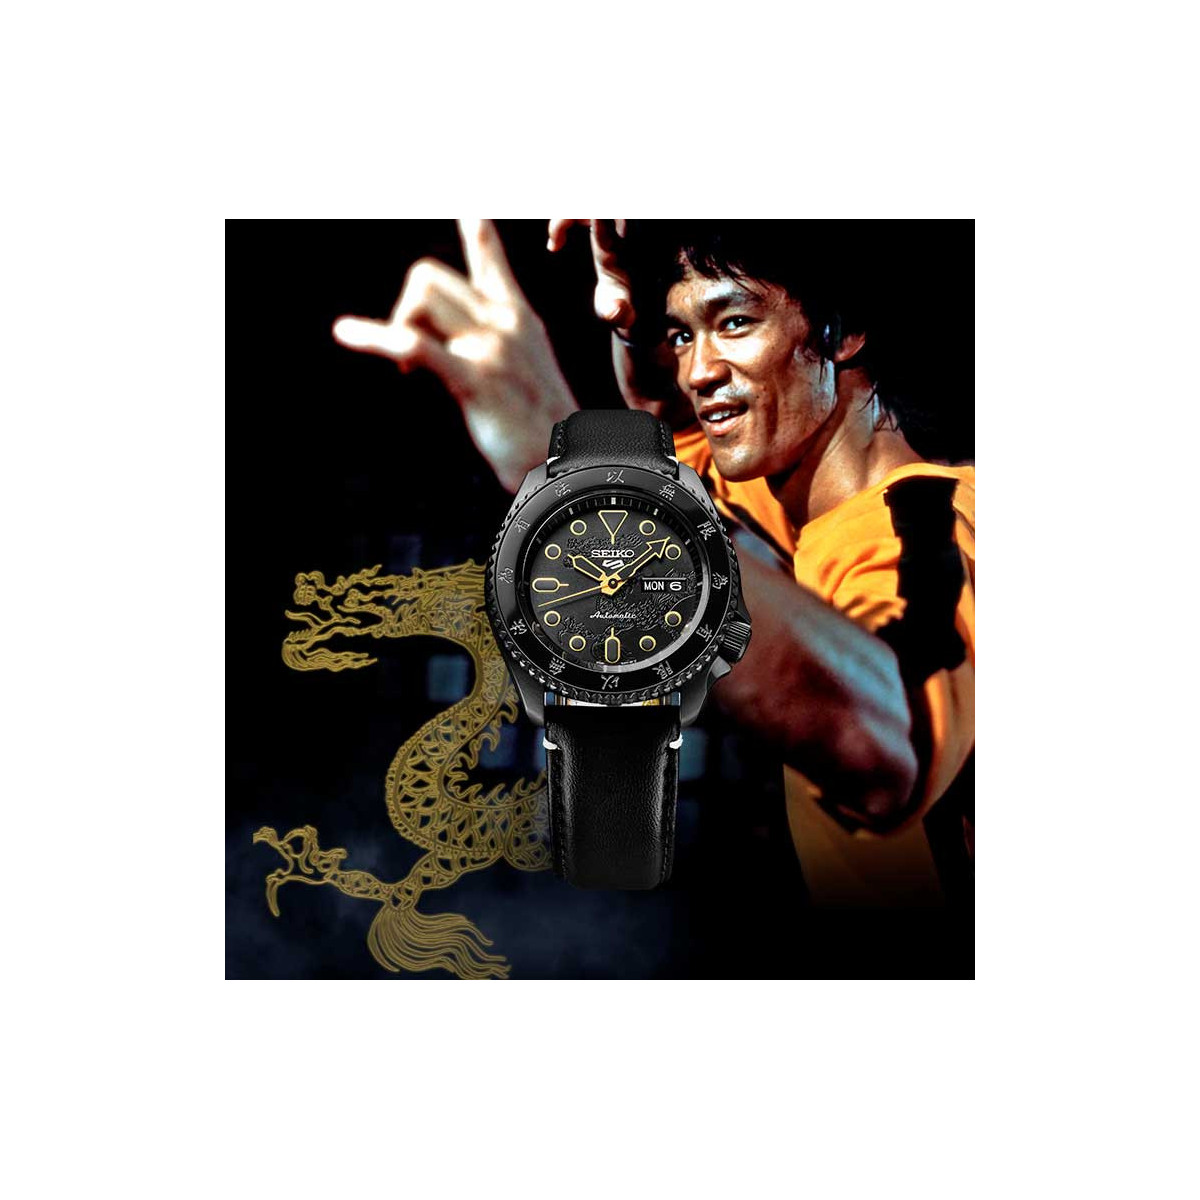 Reloj Seiko 5 Edición Limitada Bruce Lee Auto